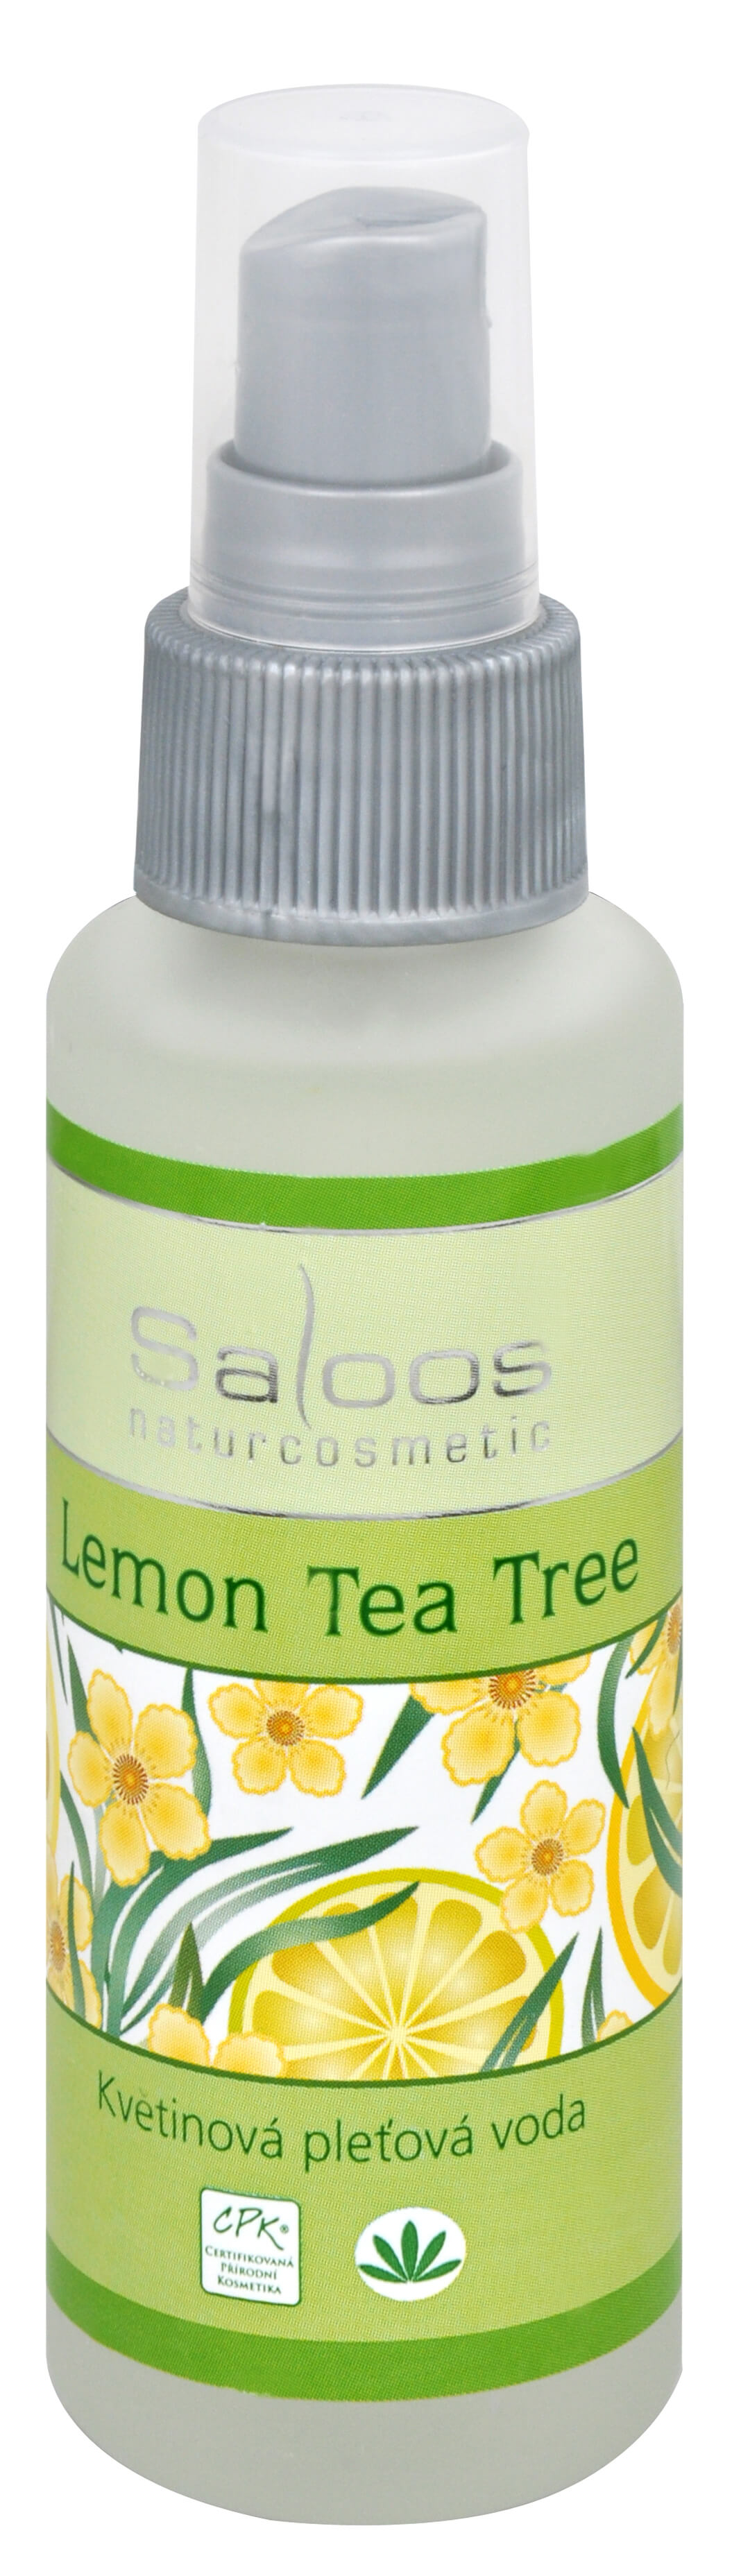 Zobrazit detail výrobku Saloos Květinová pleťová voda - Lemon tea tree 50 ml + 2 měsíce na vrácení zboží